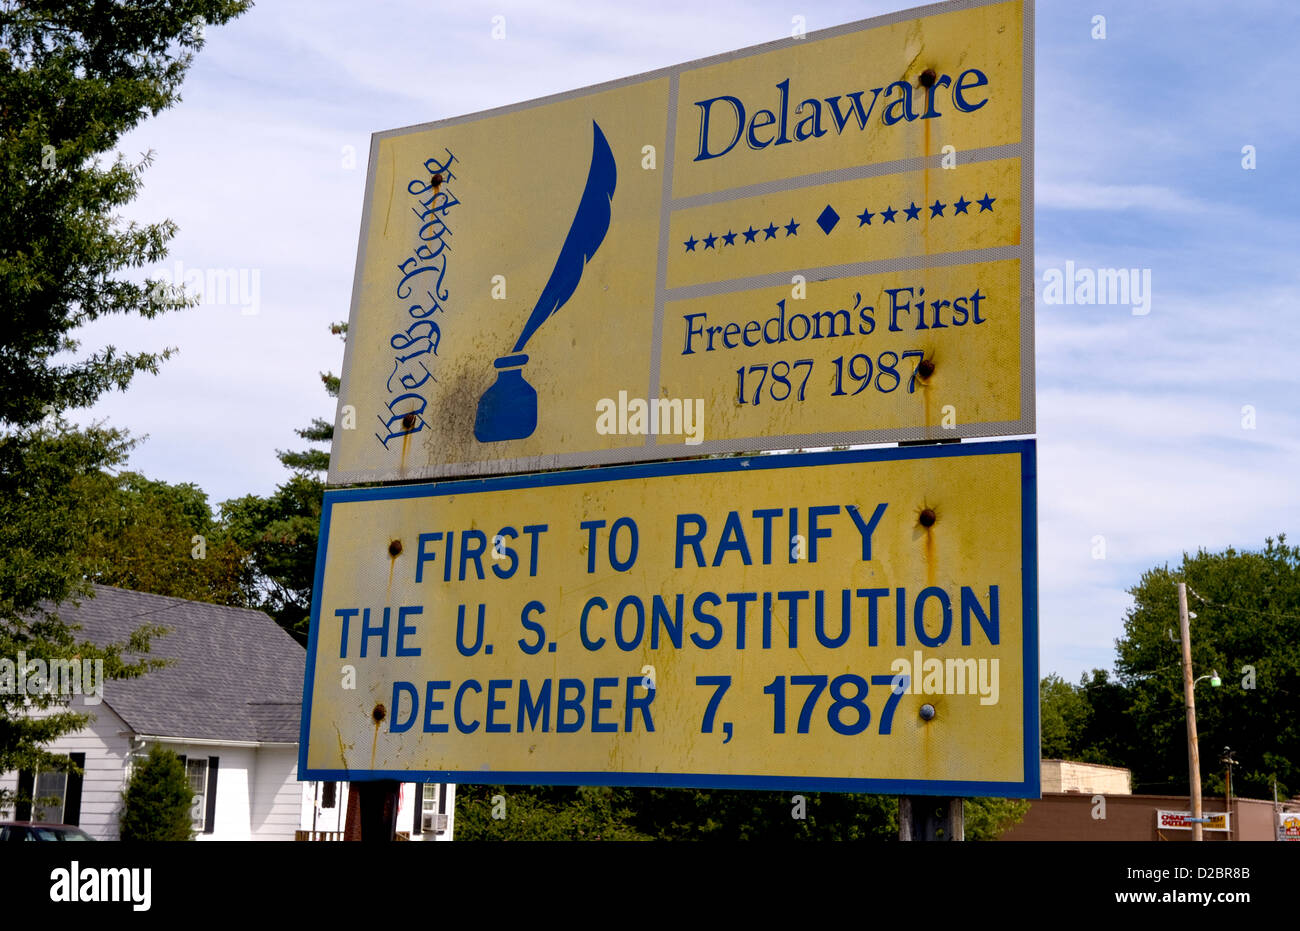 Herzlich Willkommen Sie in Delaware Zeichen. Erste juristische In uns Geschichte und erste uns Verfassung 1787 zu ratifizieren Stockfoto